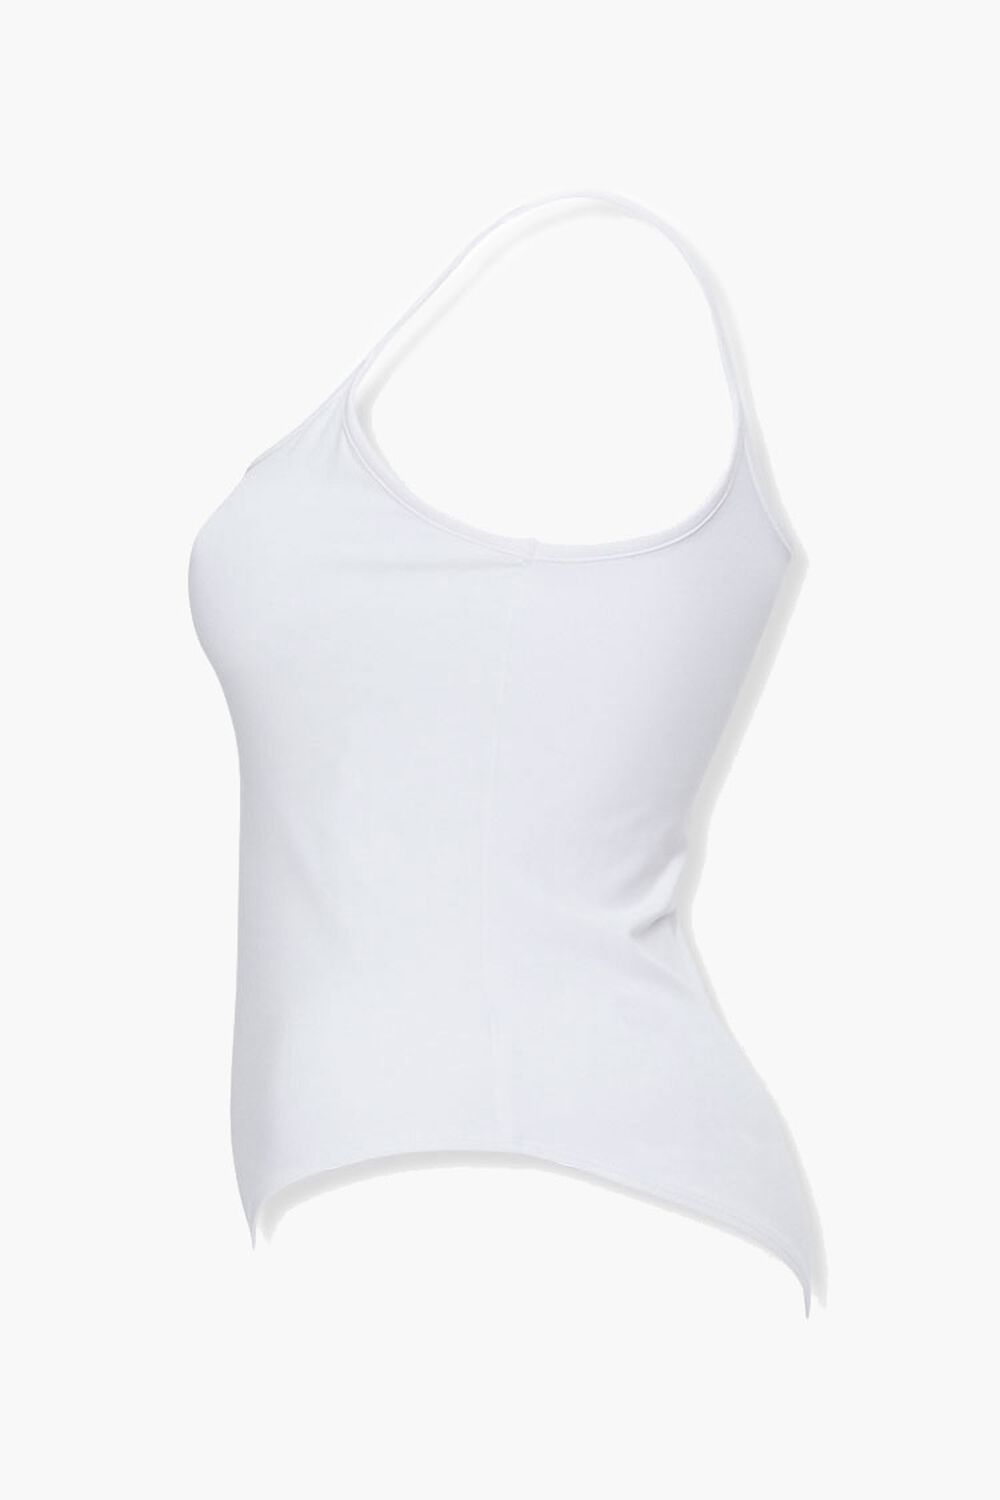 WHITE Plus Size Cami Bodysuit, image 2